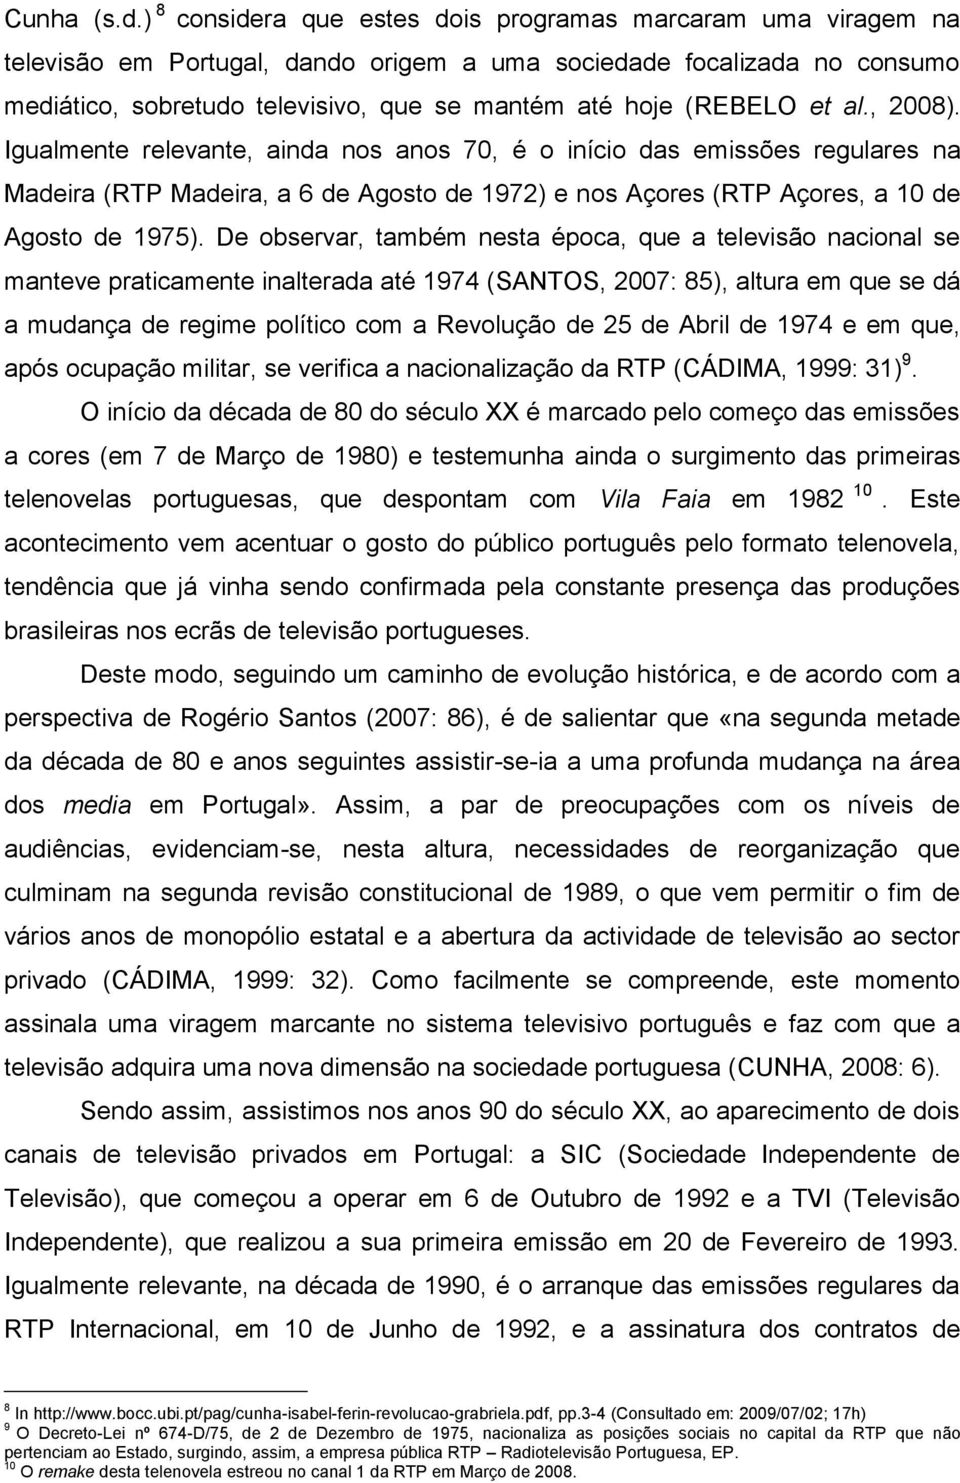 (REBELO et al., 2008). Igualmente relevante, ainda nos anos 70, é o início das emissões regulares na Madeira (RTP Madeira, a 6 de Agosto de 1972) e nos Açores (RTP Açores, a 10 de Agosto de 1975).